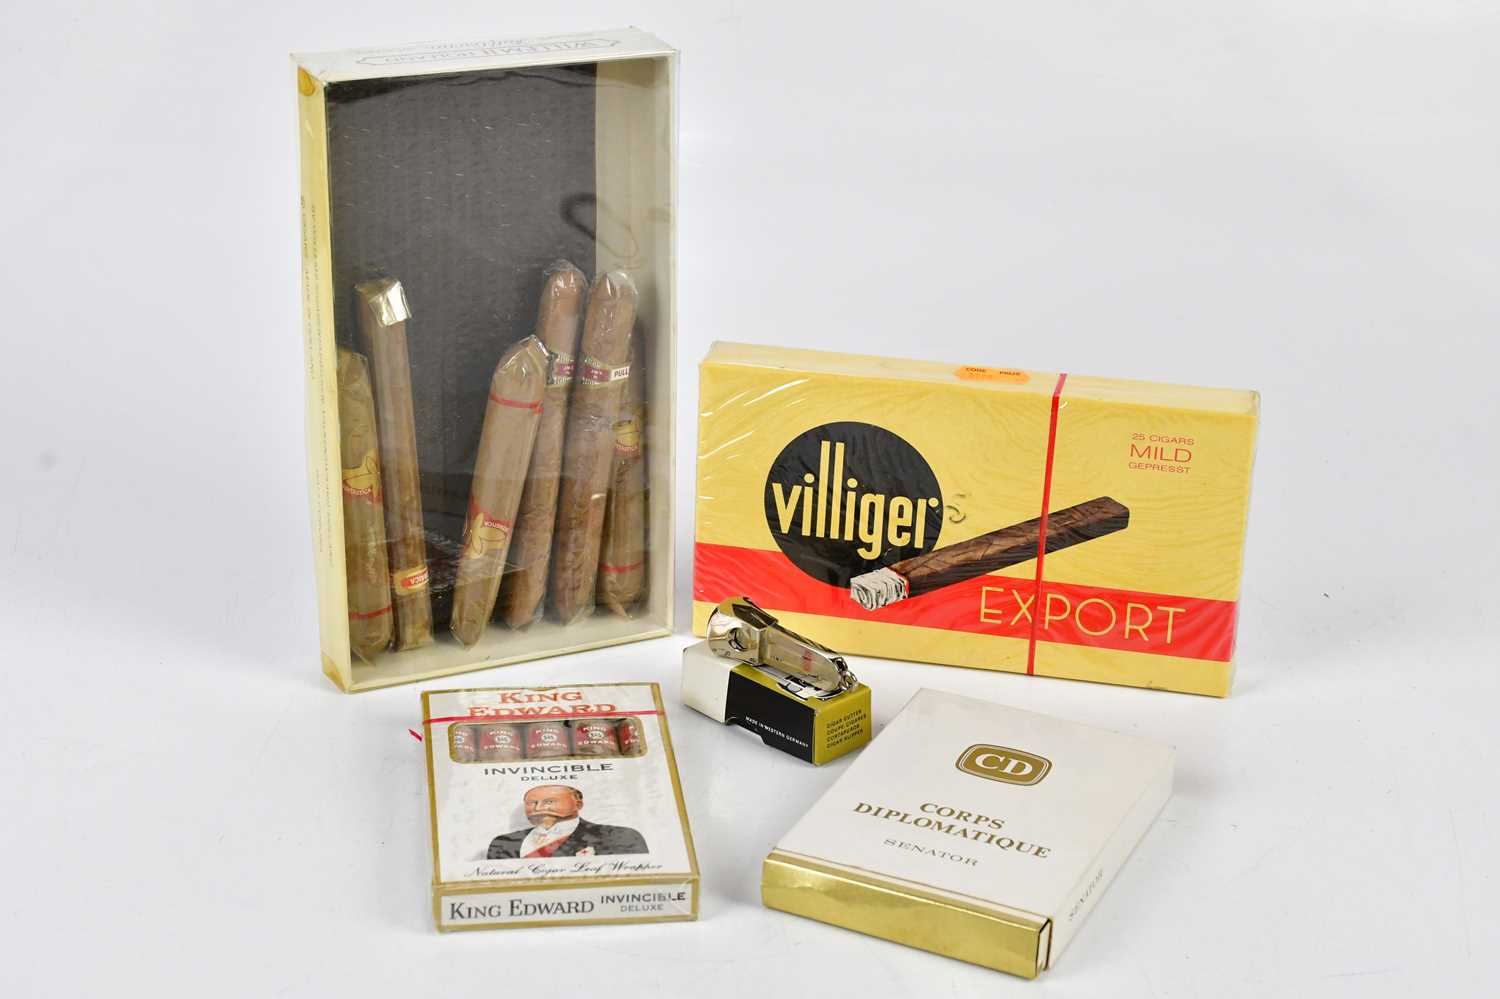 CIGARS; a boxed set of five King Edward cigars, Corps Diplomatic Senator cigars, Villiger Export